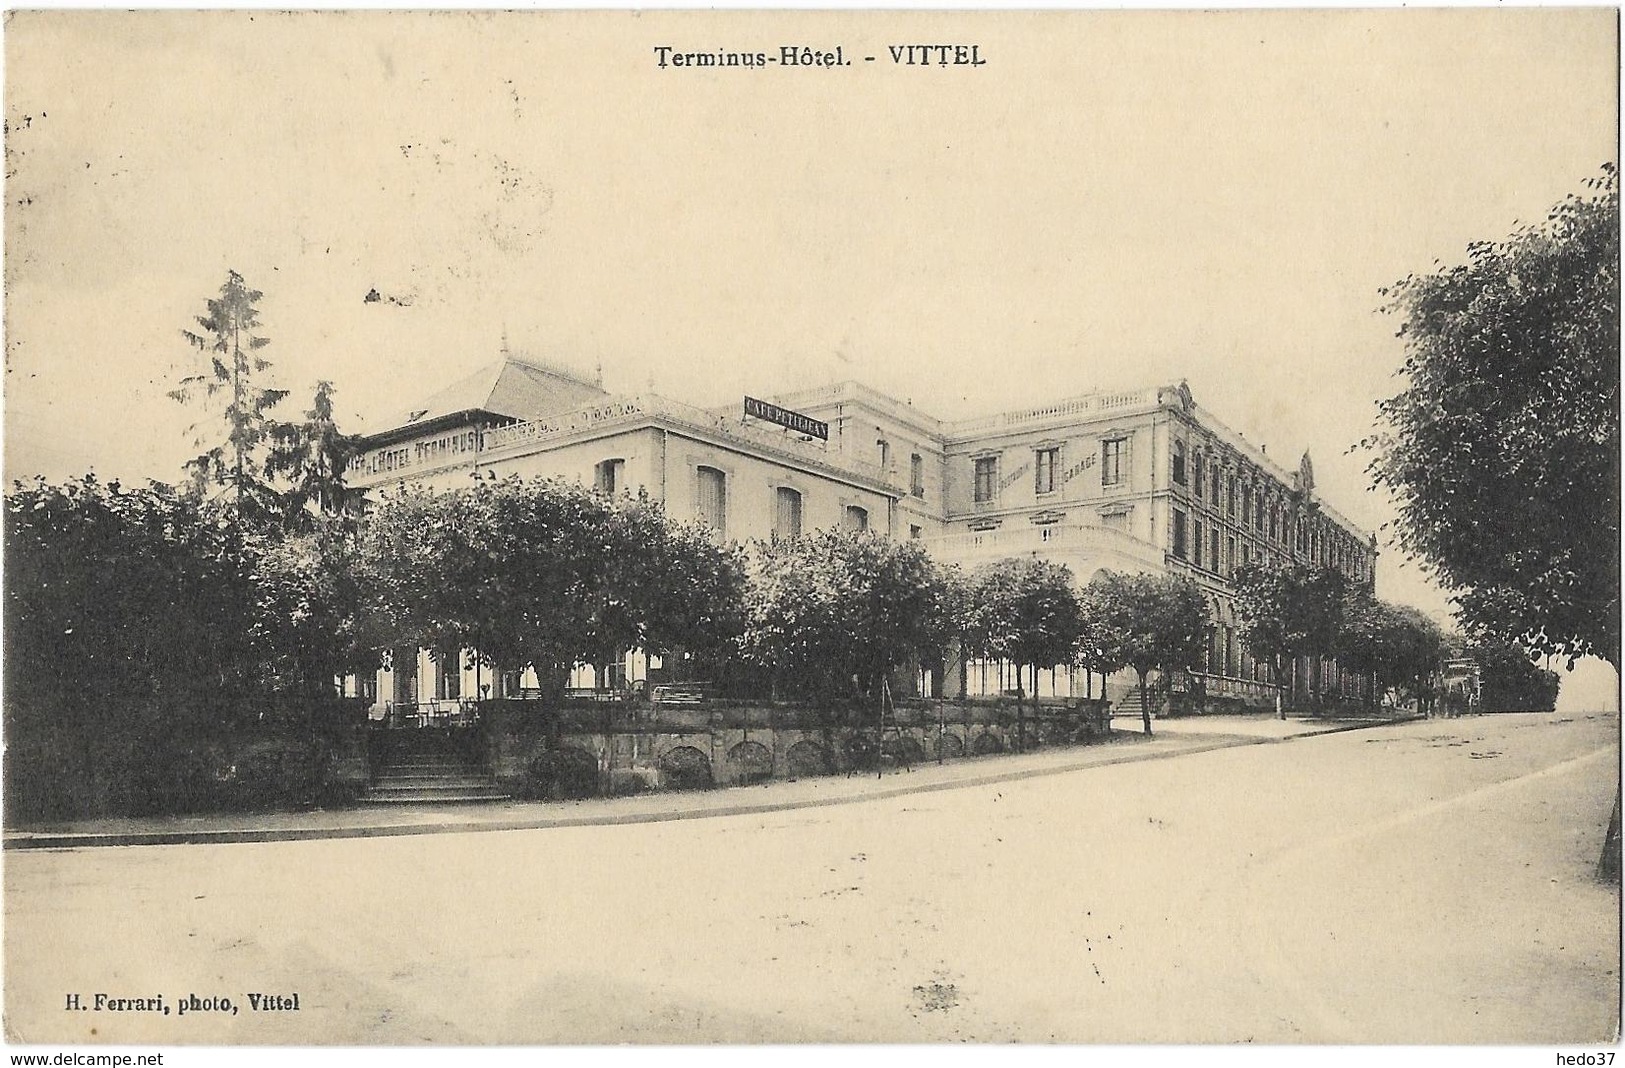 Terminus-Hôtel - Vittel - Contrexeville